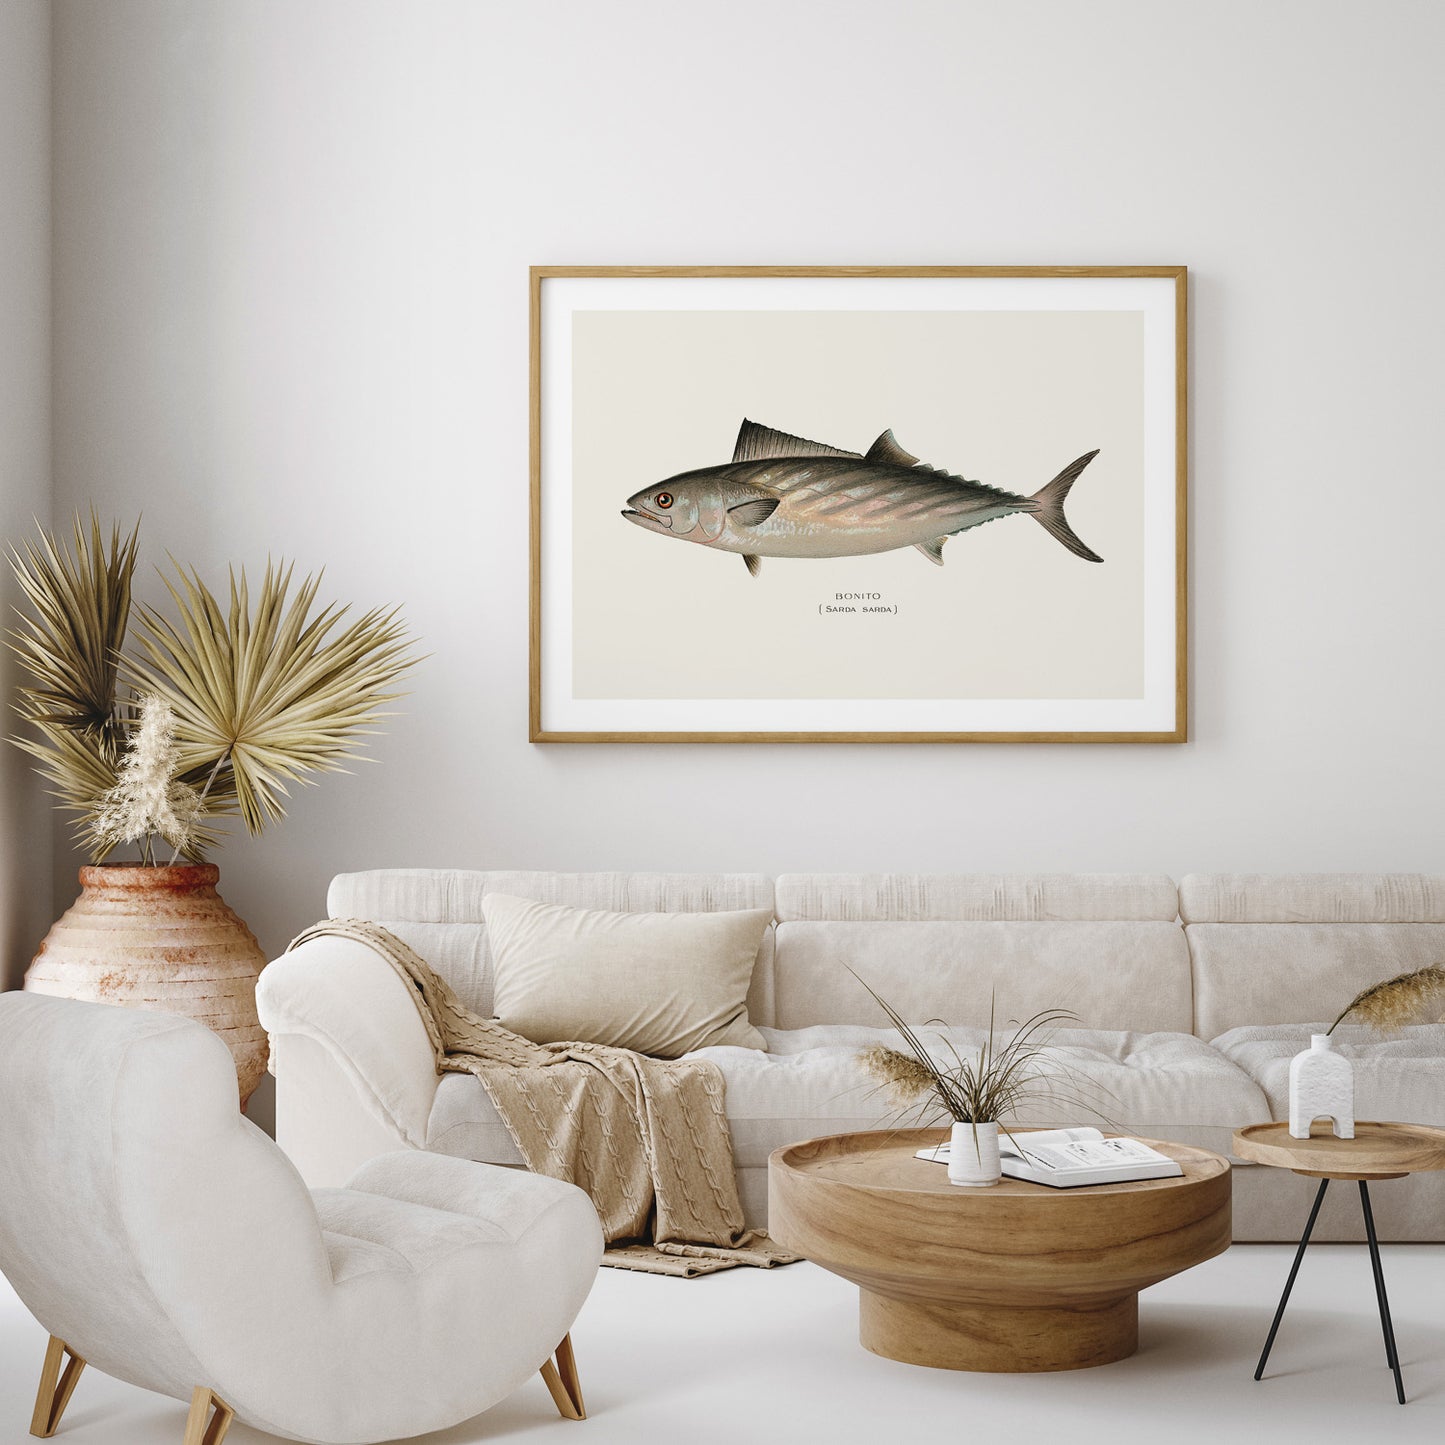 Tavla med en Ryggstrimmig pelamid poster – Plansch med fisk, fiskposter, fisktavla